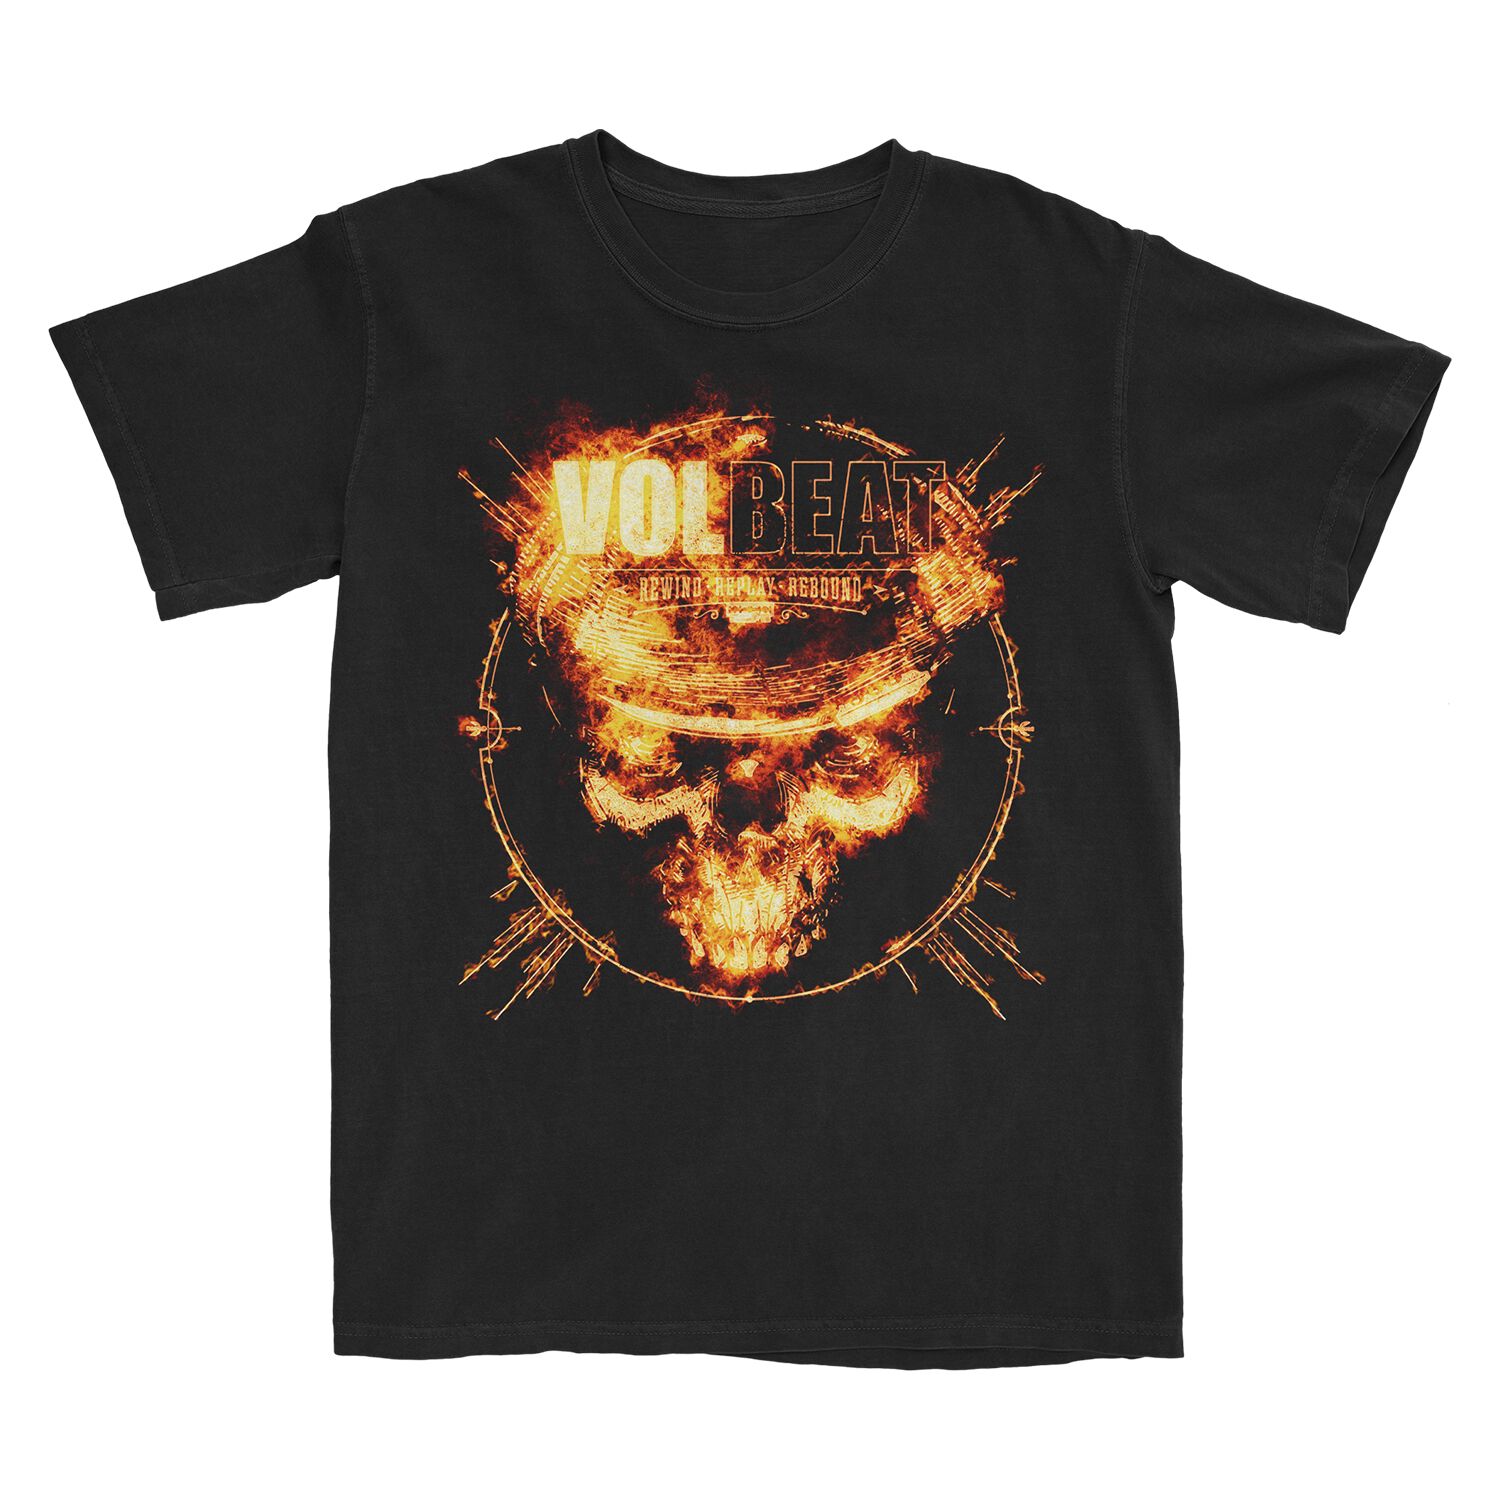 Rewind, Replay, Rebound Skull Fire T-Shirt | Volbeat Merch Official Store